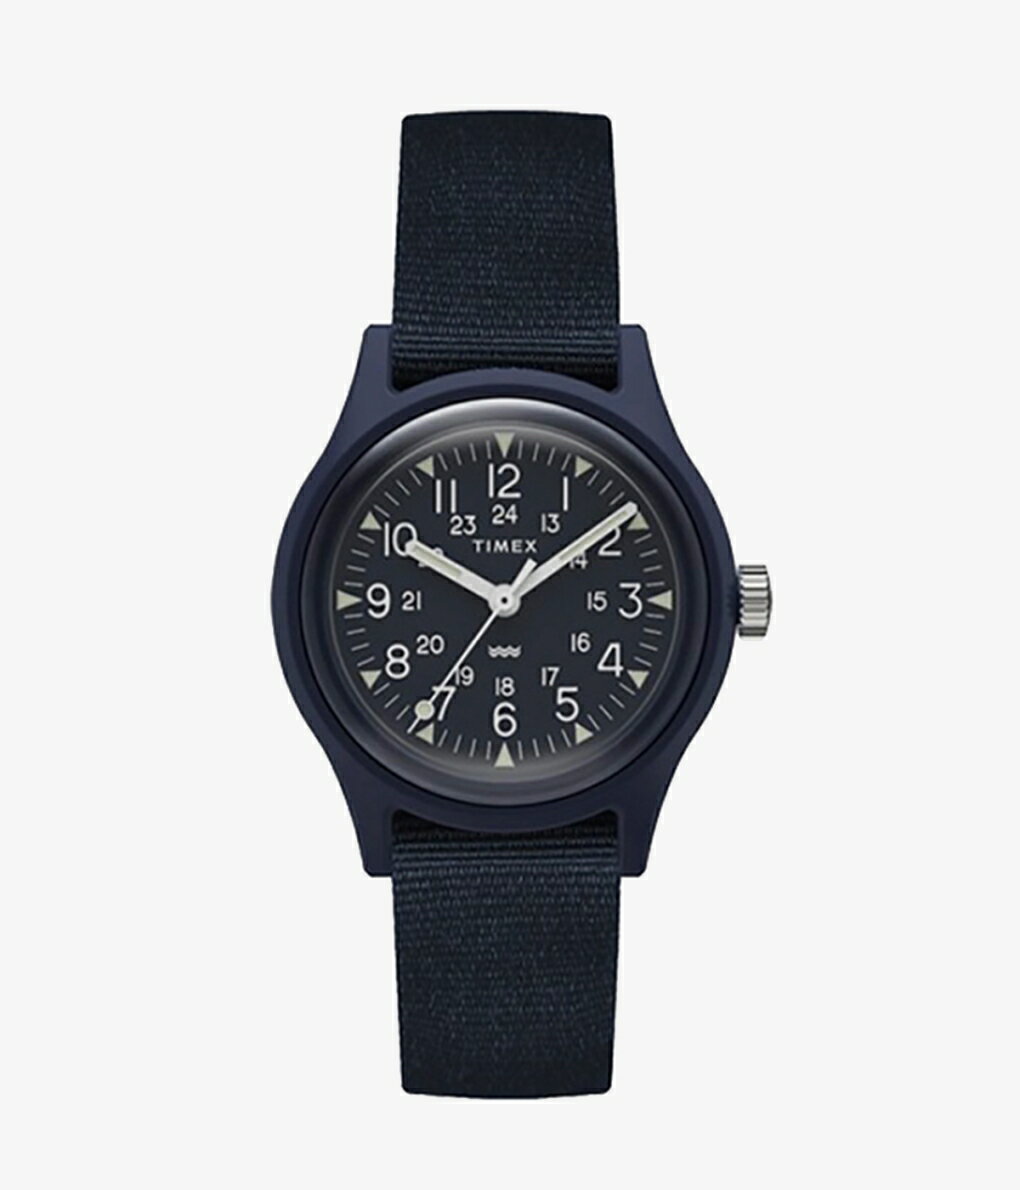 タイメックス TIMEX / タイメックス : オリジナルキャンパー 29mm : オリジナルキャンパー 29mm 時計 腕時計 手巻き式 ディスポーサブル・ウォッチ 使い捨て時計 ミリタリーウォッチ メンズ レディース ユニセックス : TW2T33800【AST】